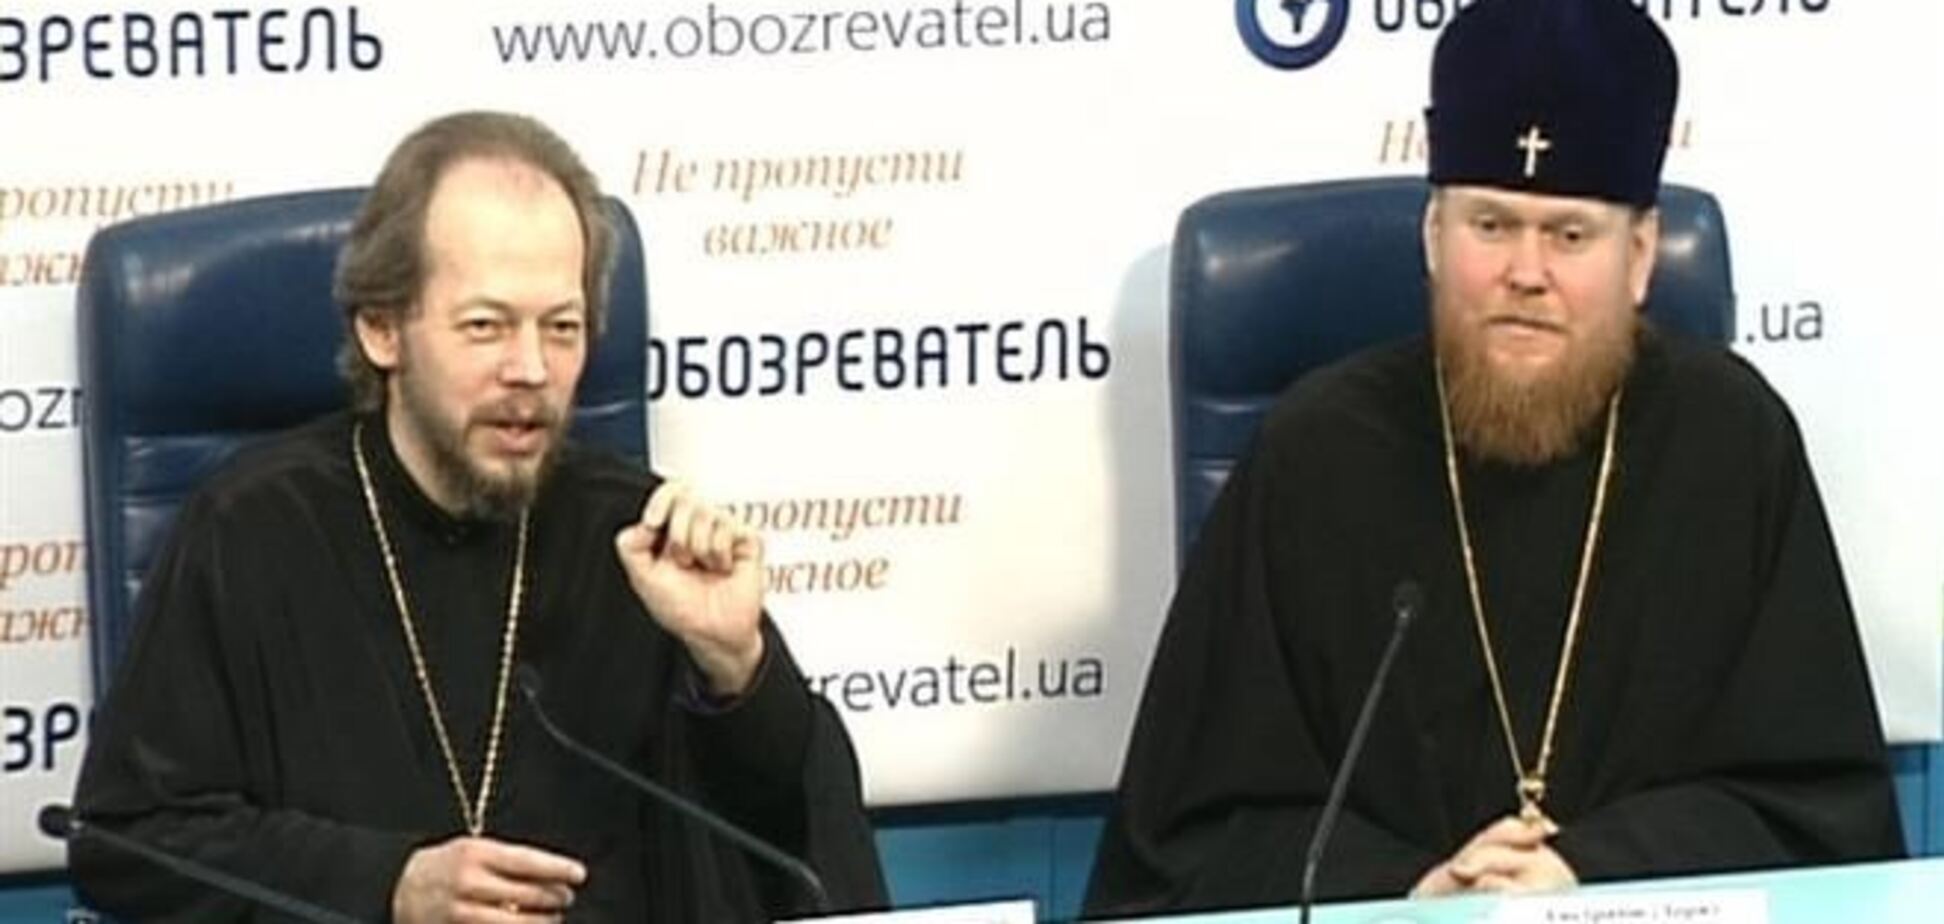 Объединение православных церквей в Украине произойдет 'в один миг' - УПЦ КП